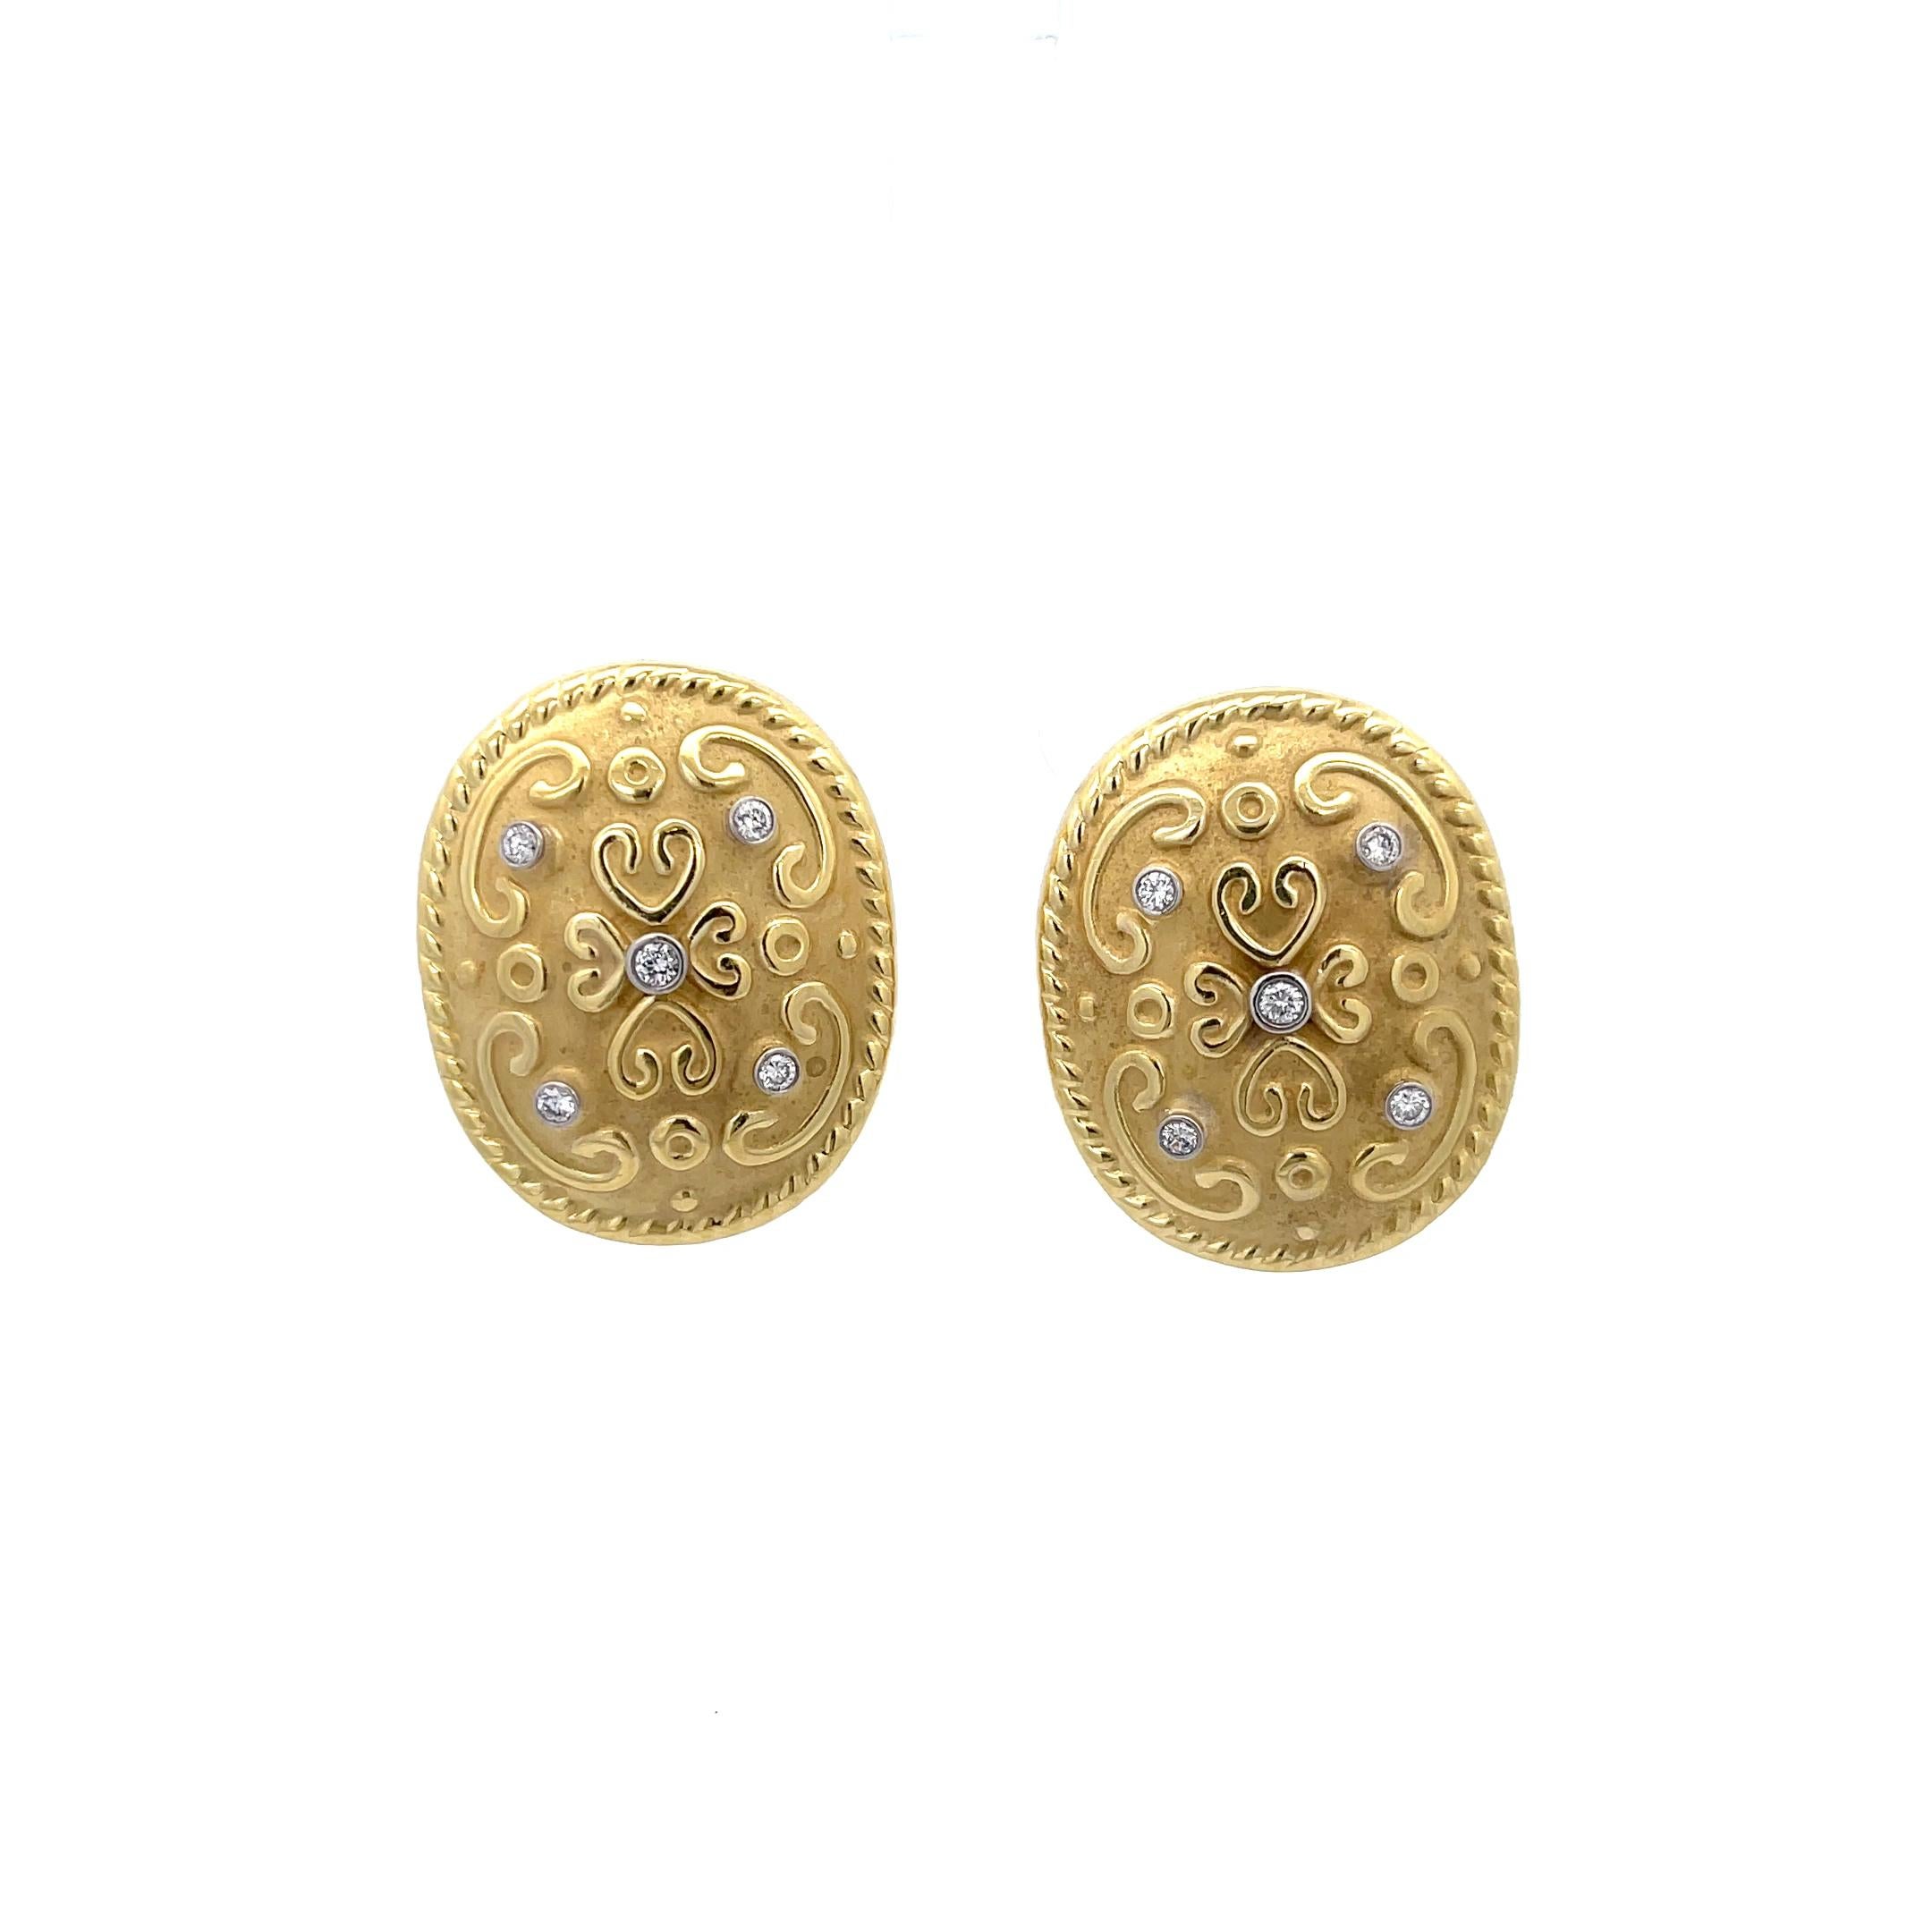 Ovale verschnörkelte Diamant-Ohrringe aus 18 Karat Gelbgold. Die Ohrringe sind mit ca. 0,36 ct runden Brillanten in der Lünette besetzt. Die Ohrringe messen 1,25 Zoll mal 1 Zoll und wiegen 13,49 Gramm.